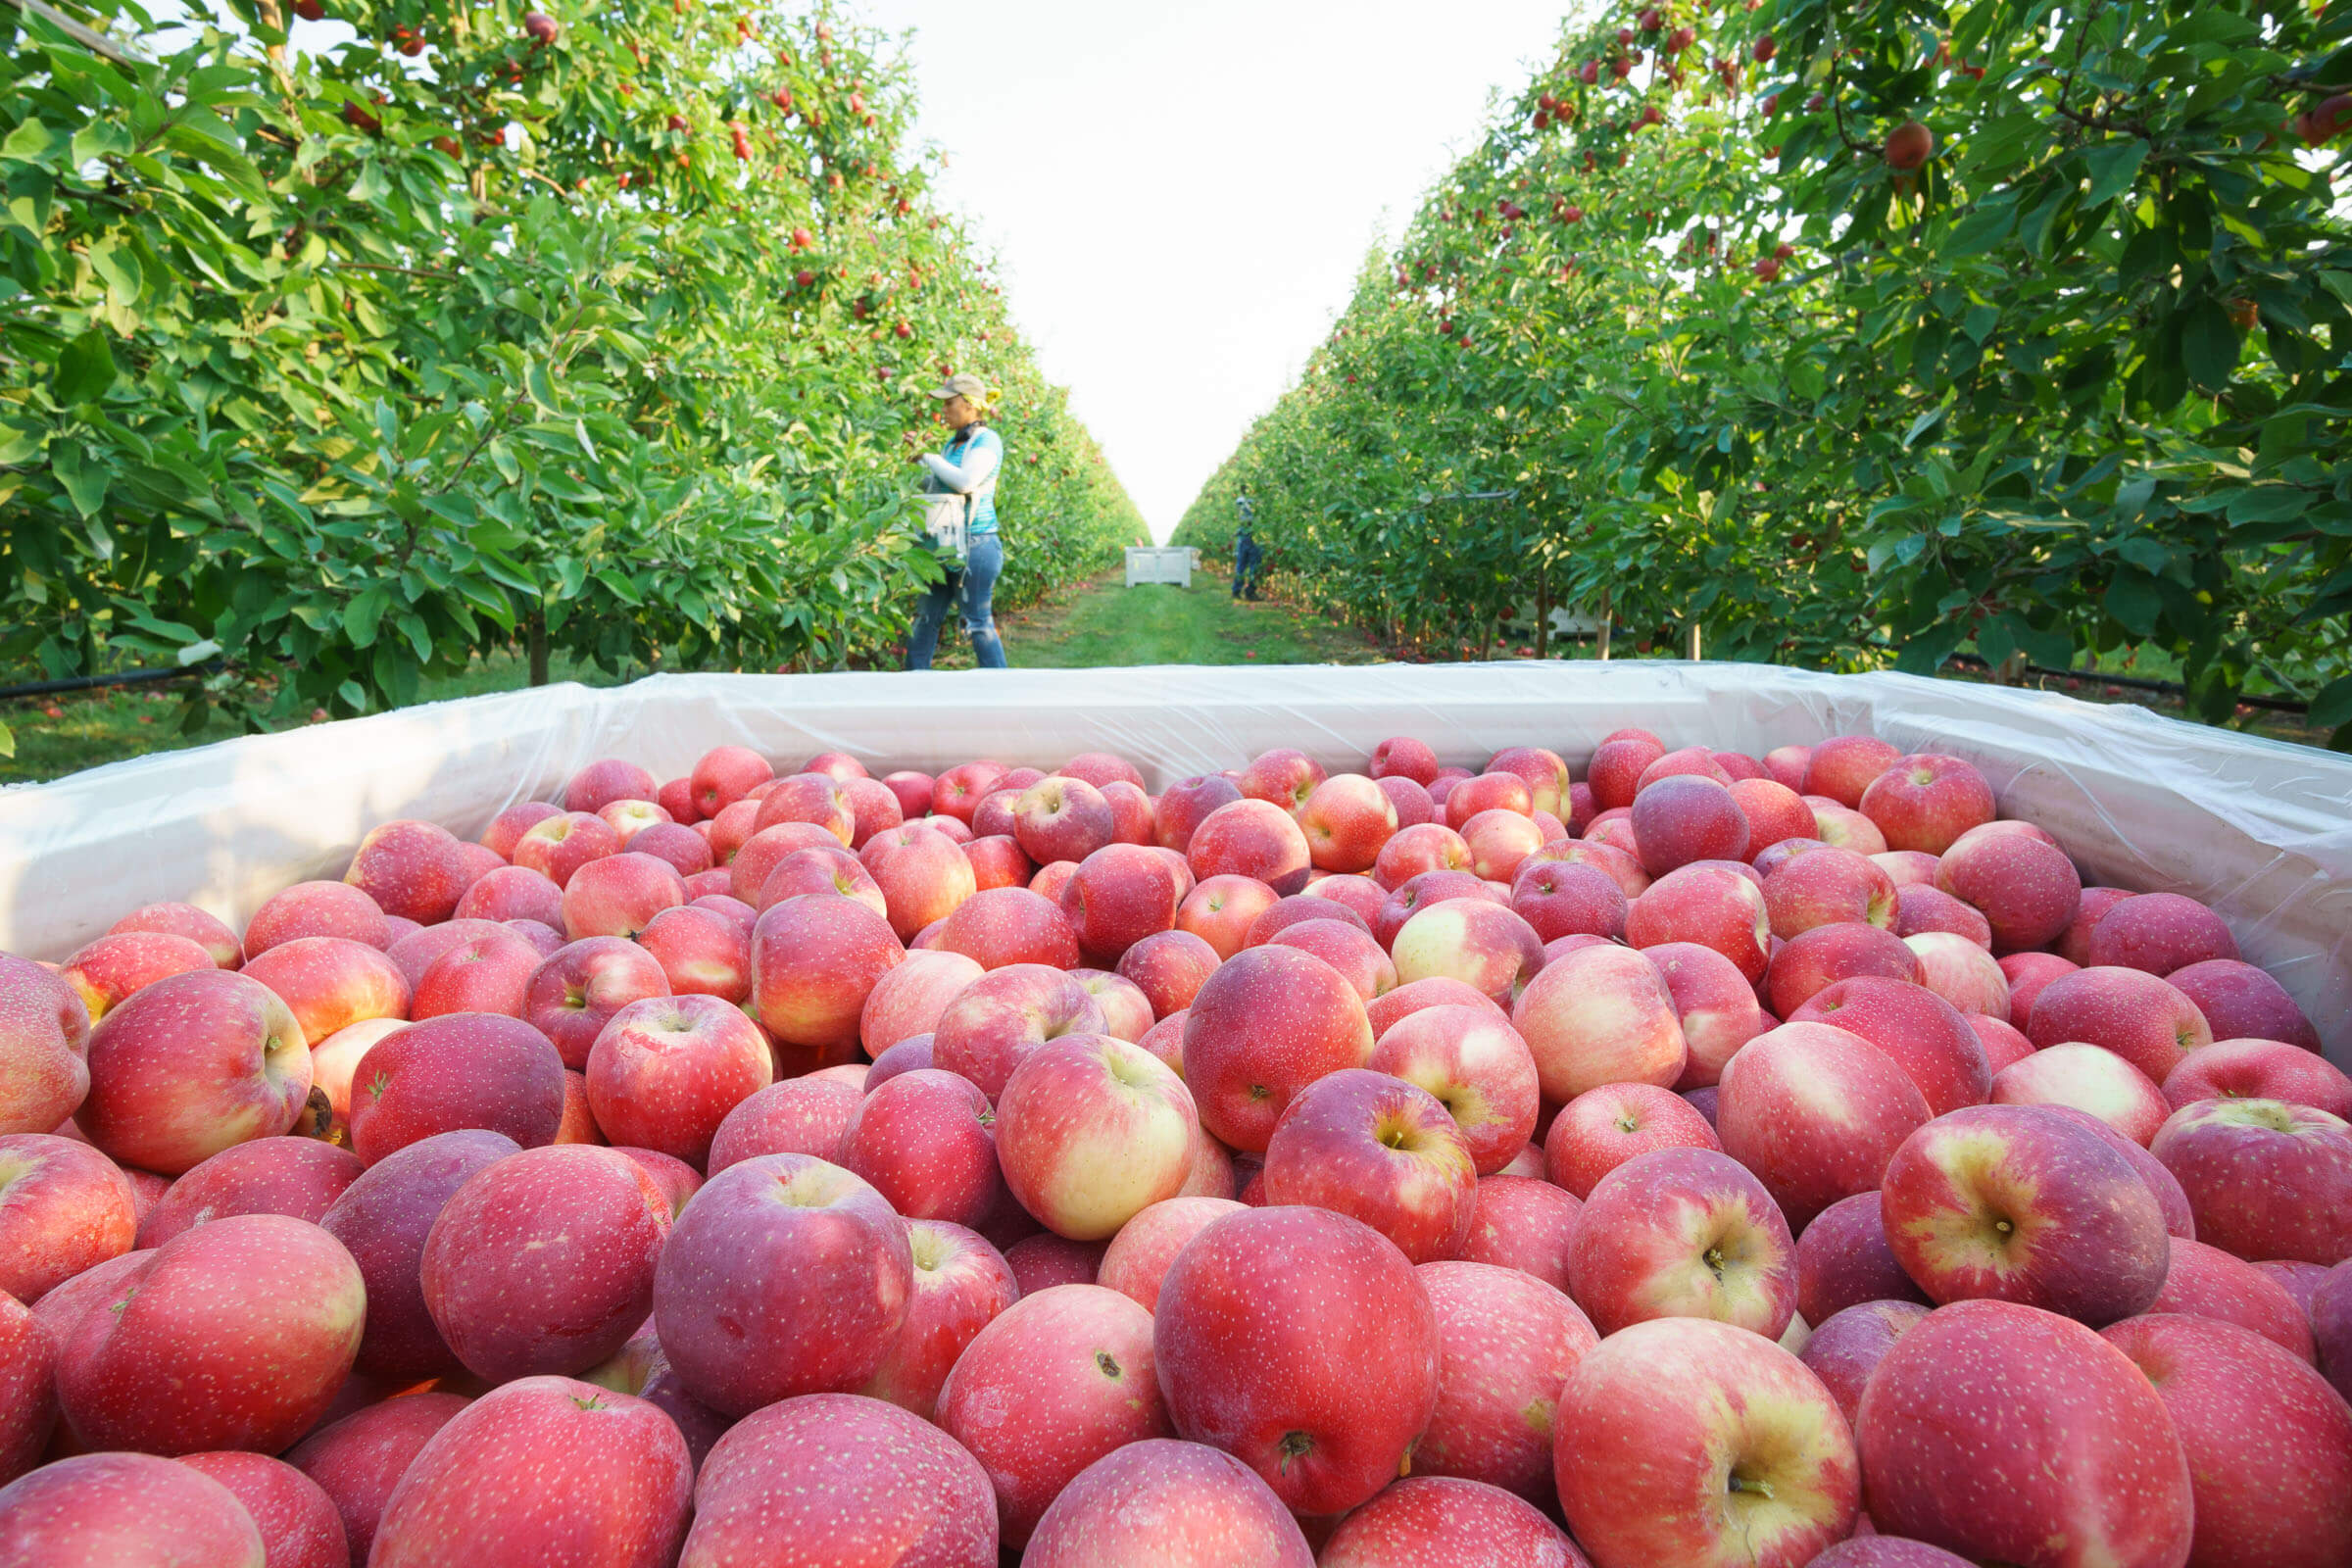 https://www.stemilt.com/wp-content/uploads/2016/07/1207-Stemilt-harvest-Quincy-apples-6913.jpg